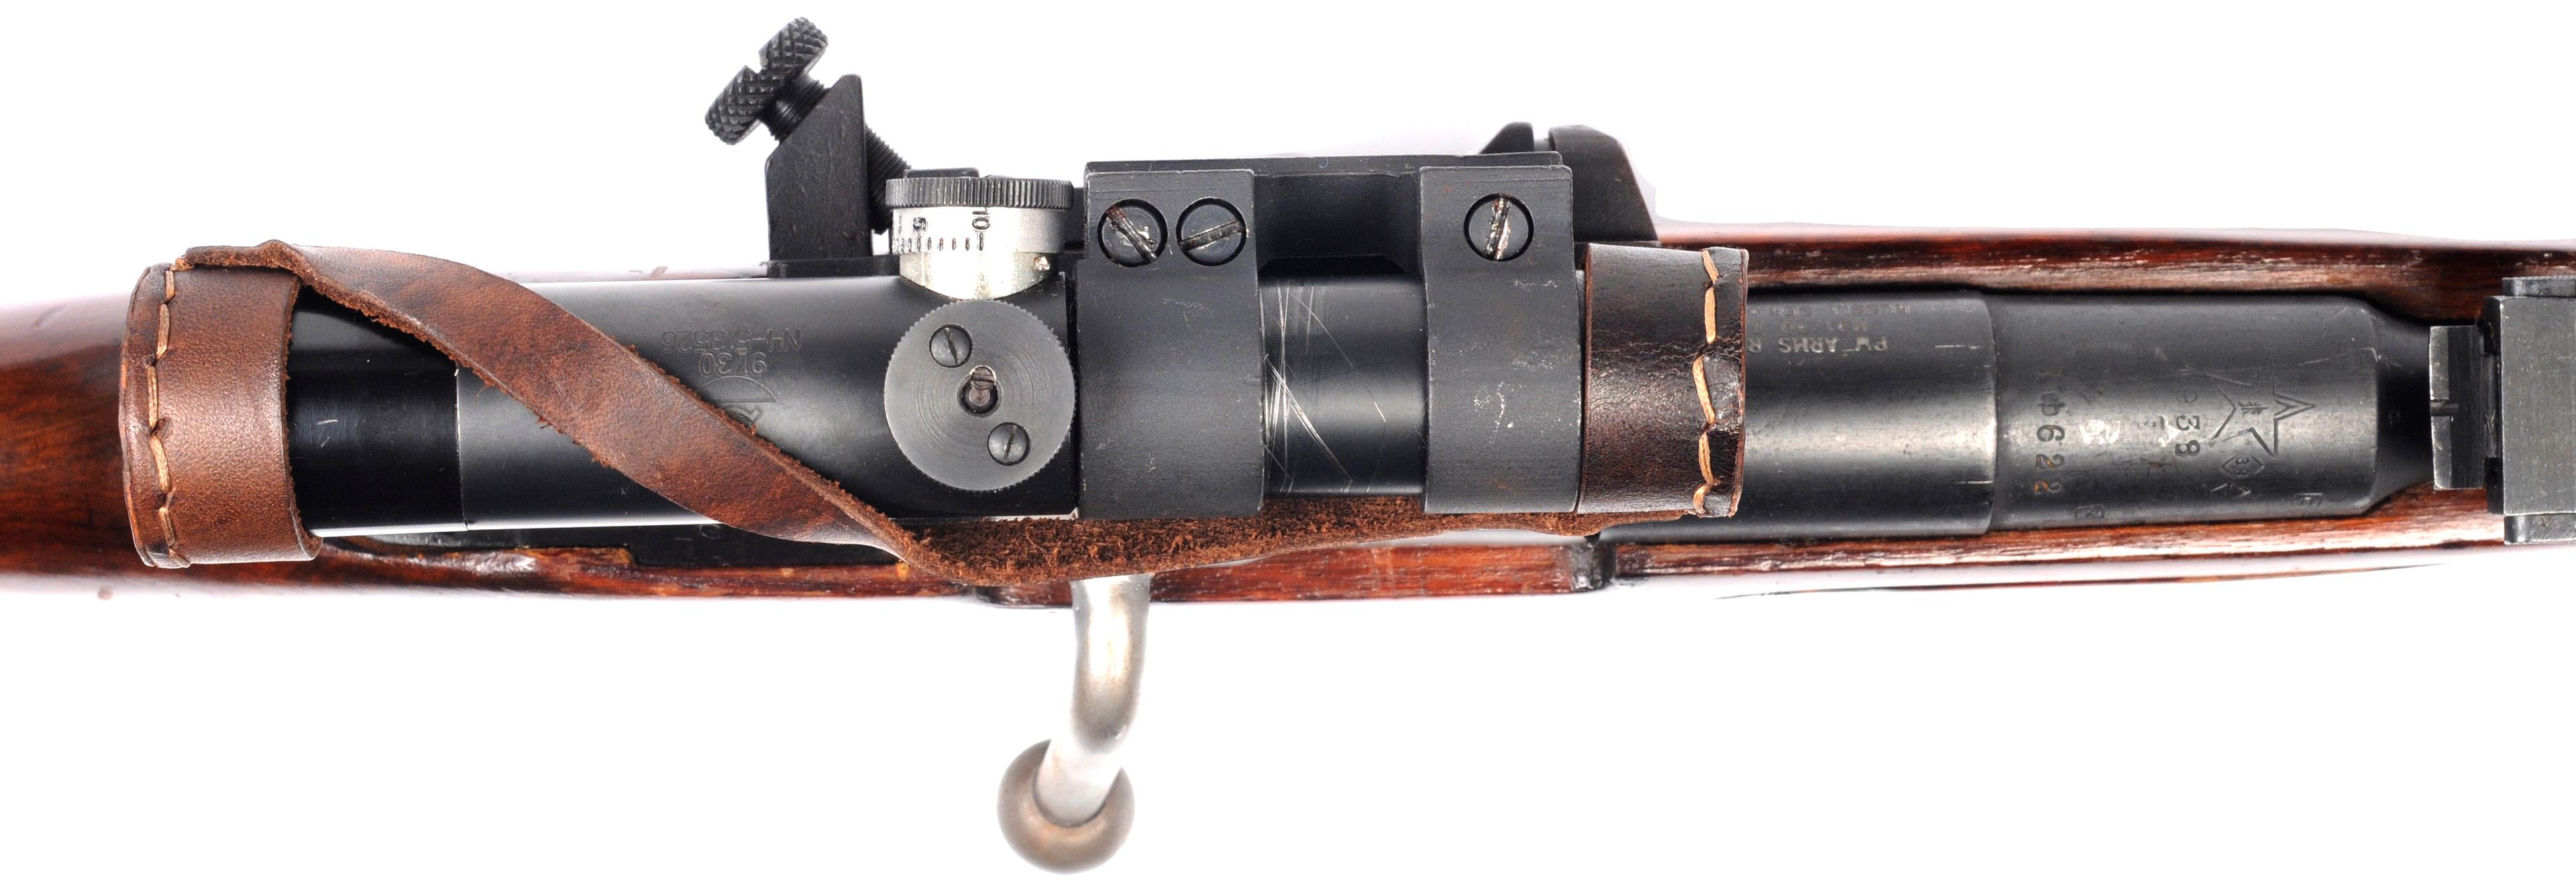 Soviet Military WWII 91/30 7.62x54rmm Bolt-Action Sniper Rifle - FFL # RMN099690/BO622 (OAJ 1)